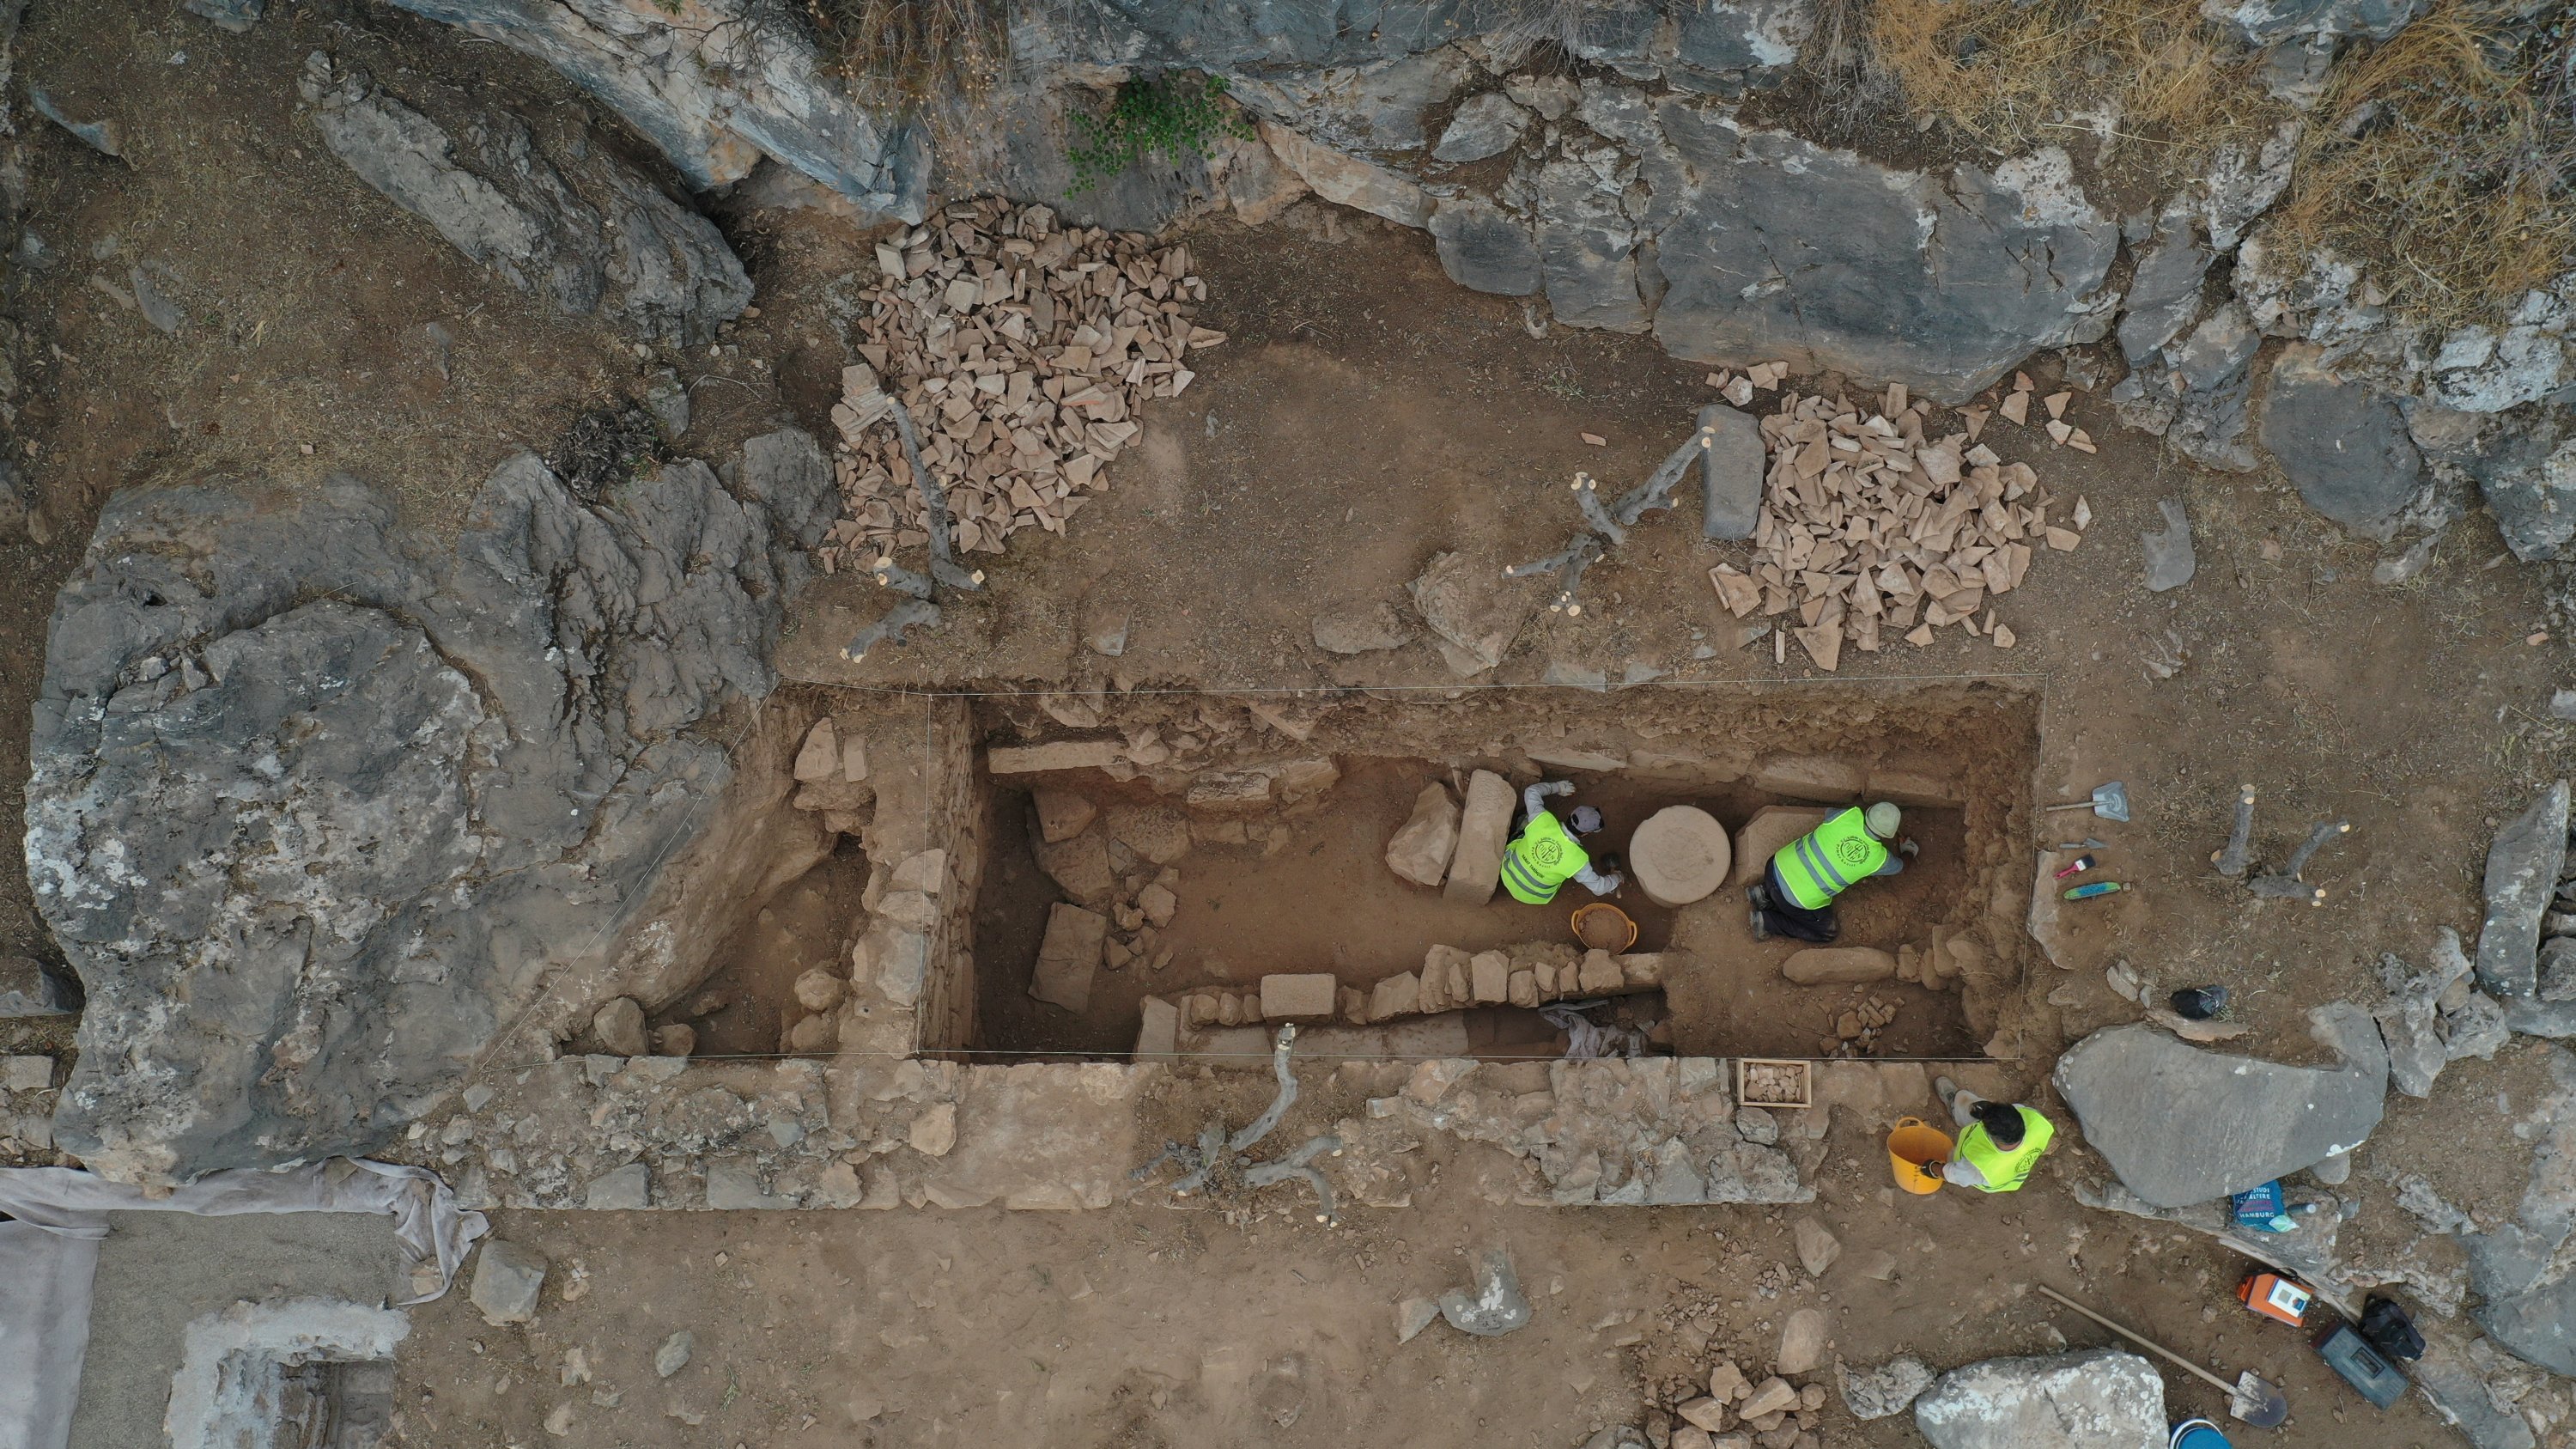 Αρχαιολόγοι και προσωπικό εργάζονται στον χώρο ανασκαφής στην αρχαία πόλη Πριέν στην επαρχία Aydın της Τουρκίας, στις 18 Οκτωβρίου 2021. (Φωτογραφία ΑΑ)